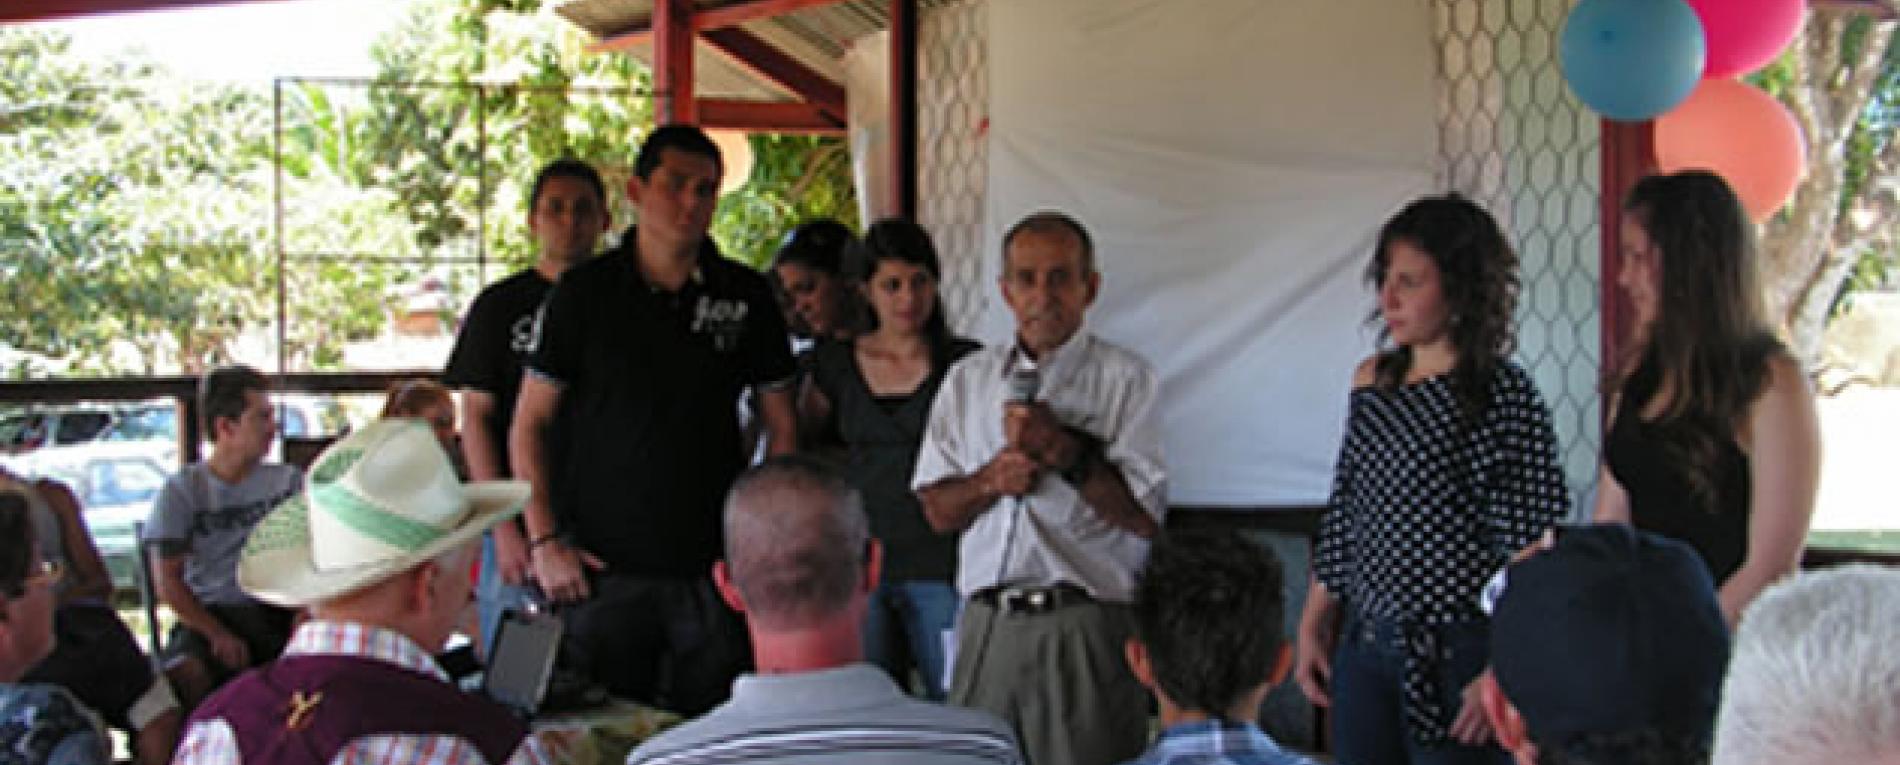 TCU organiza ferias ambientales en comunidades de San Ramón